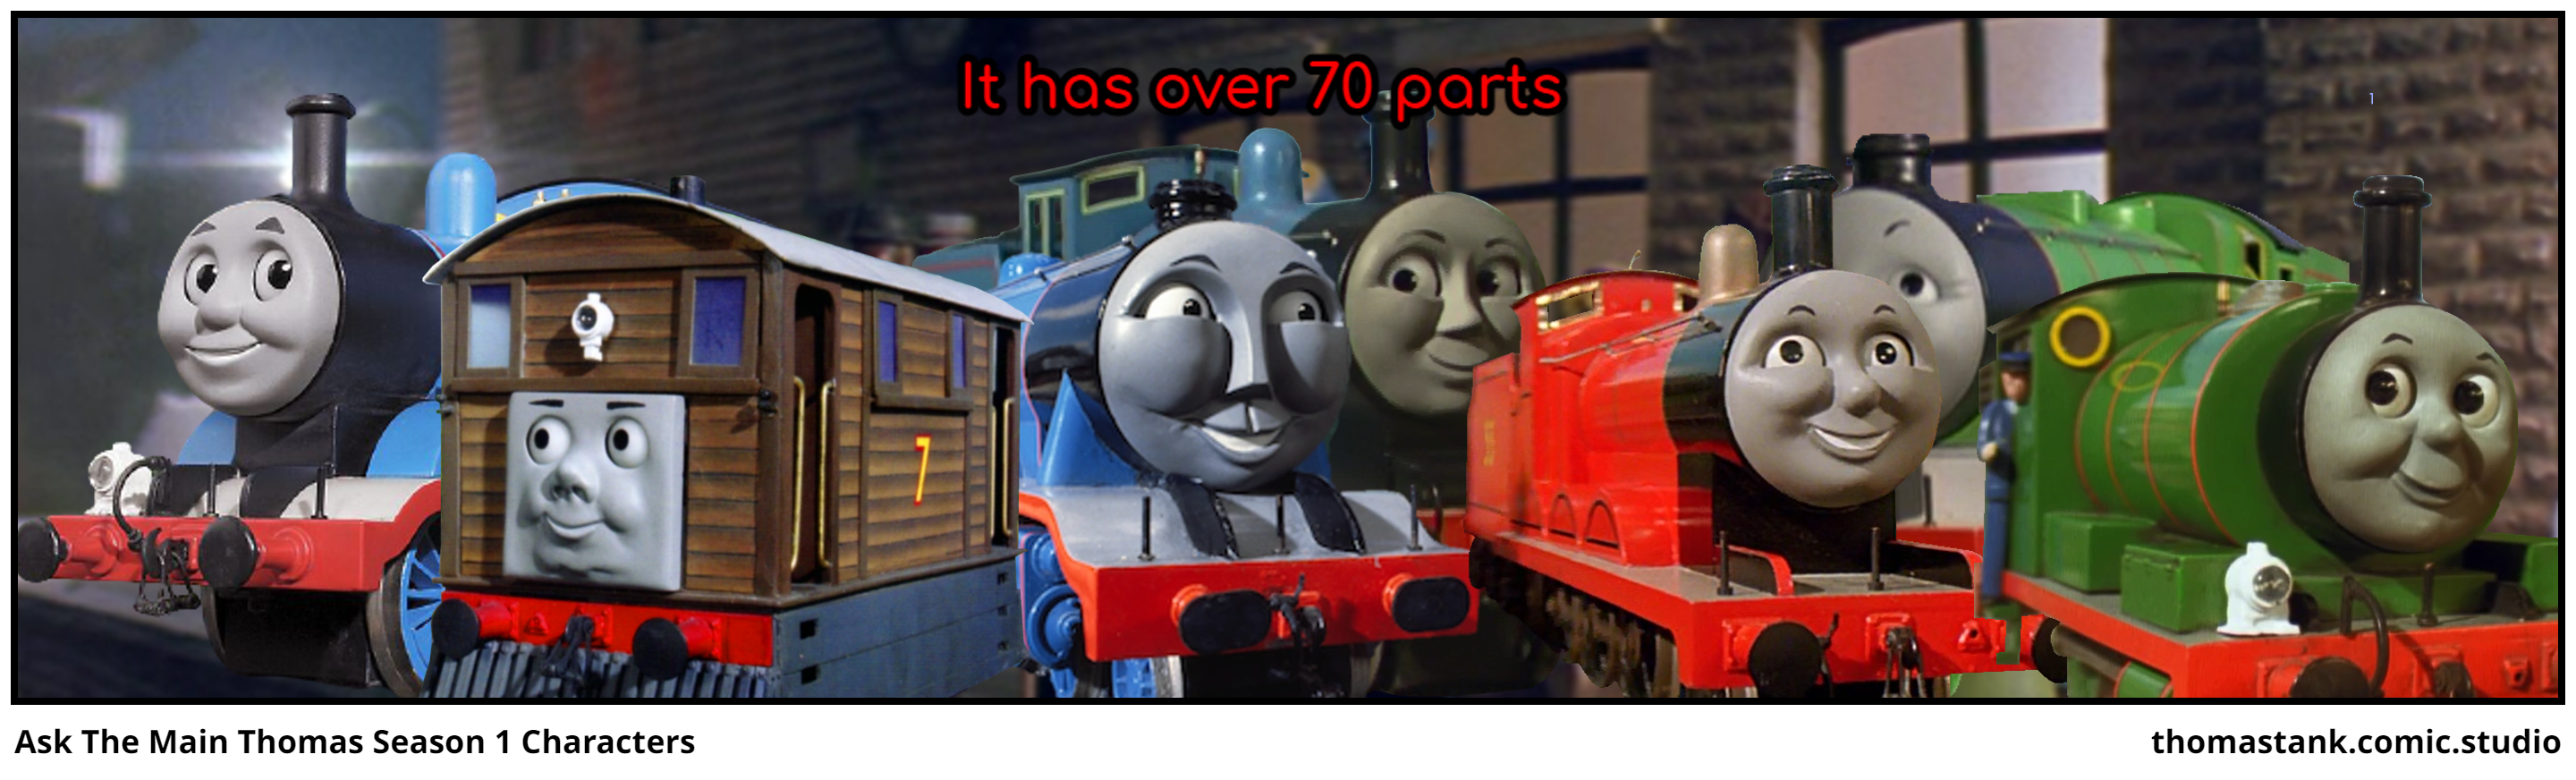 Ask The Main Thomas Season 1 Characters